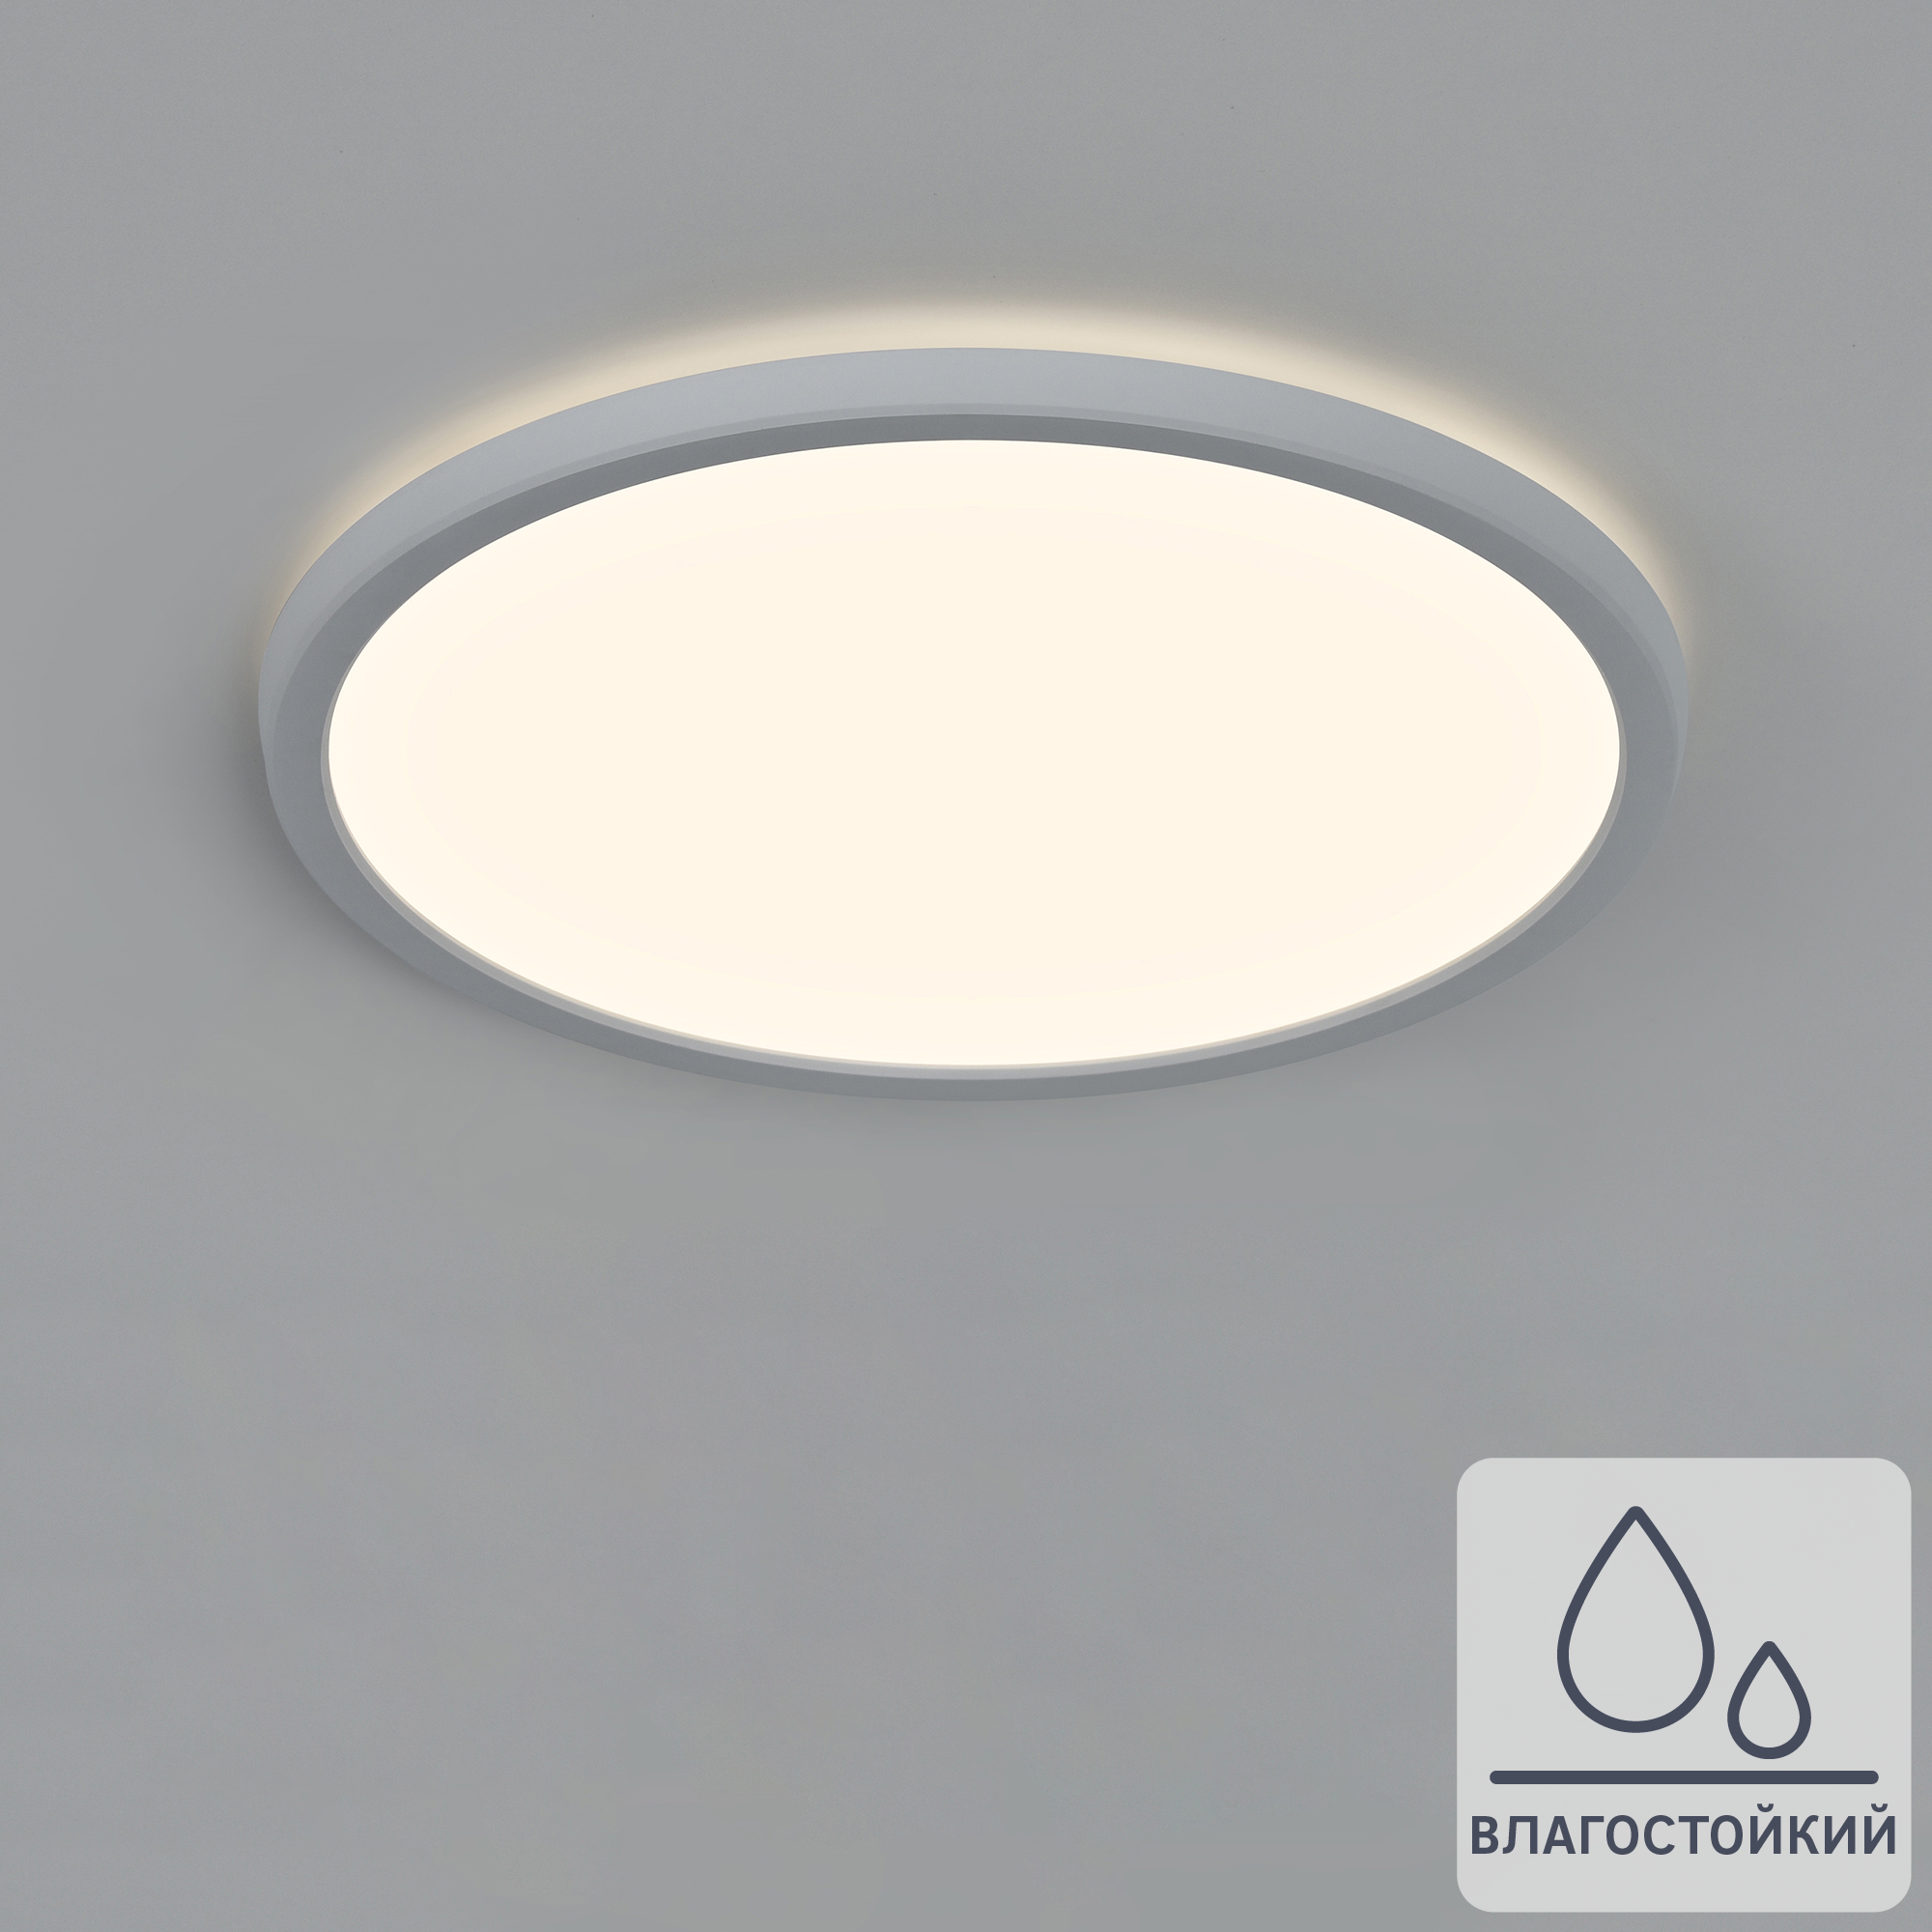 82666385 Светильник настенно-потолочный светодиодный влагозащищенный Lano 8.5 м² нейтральный белый свет цвет белый STLM-0033303 INSPIRE